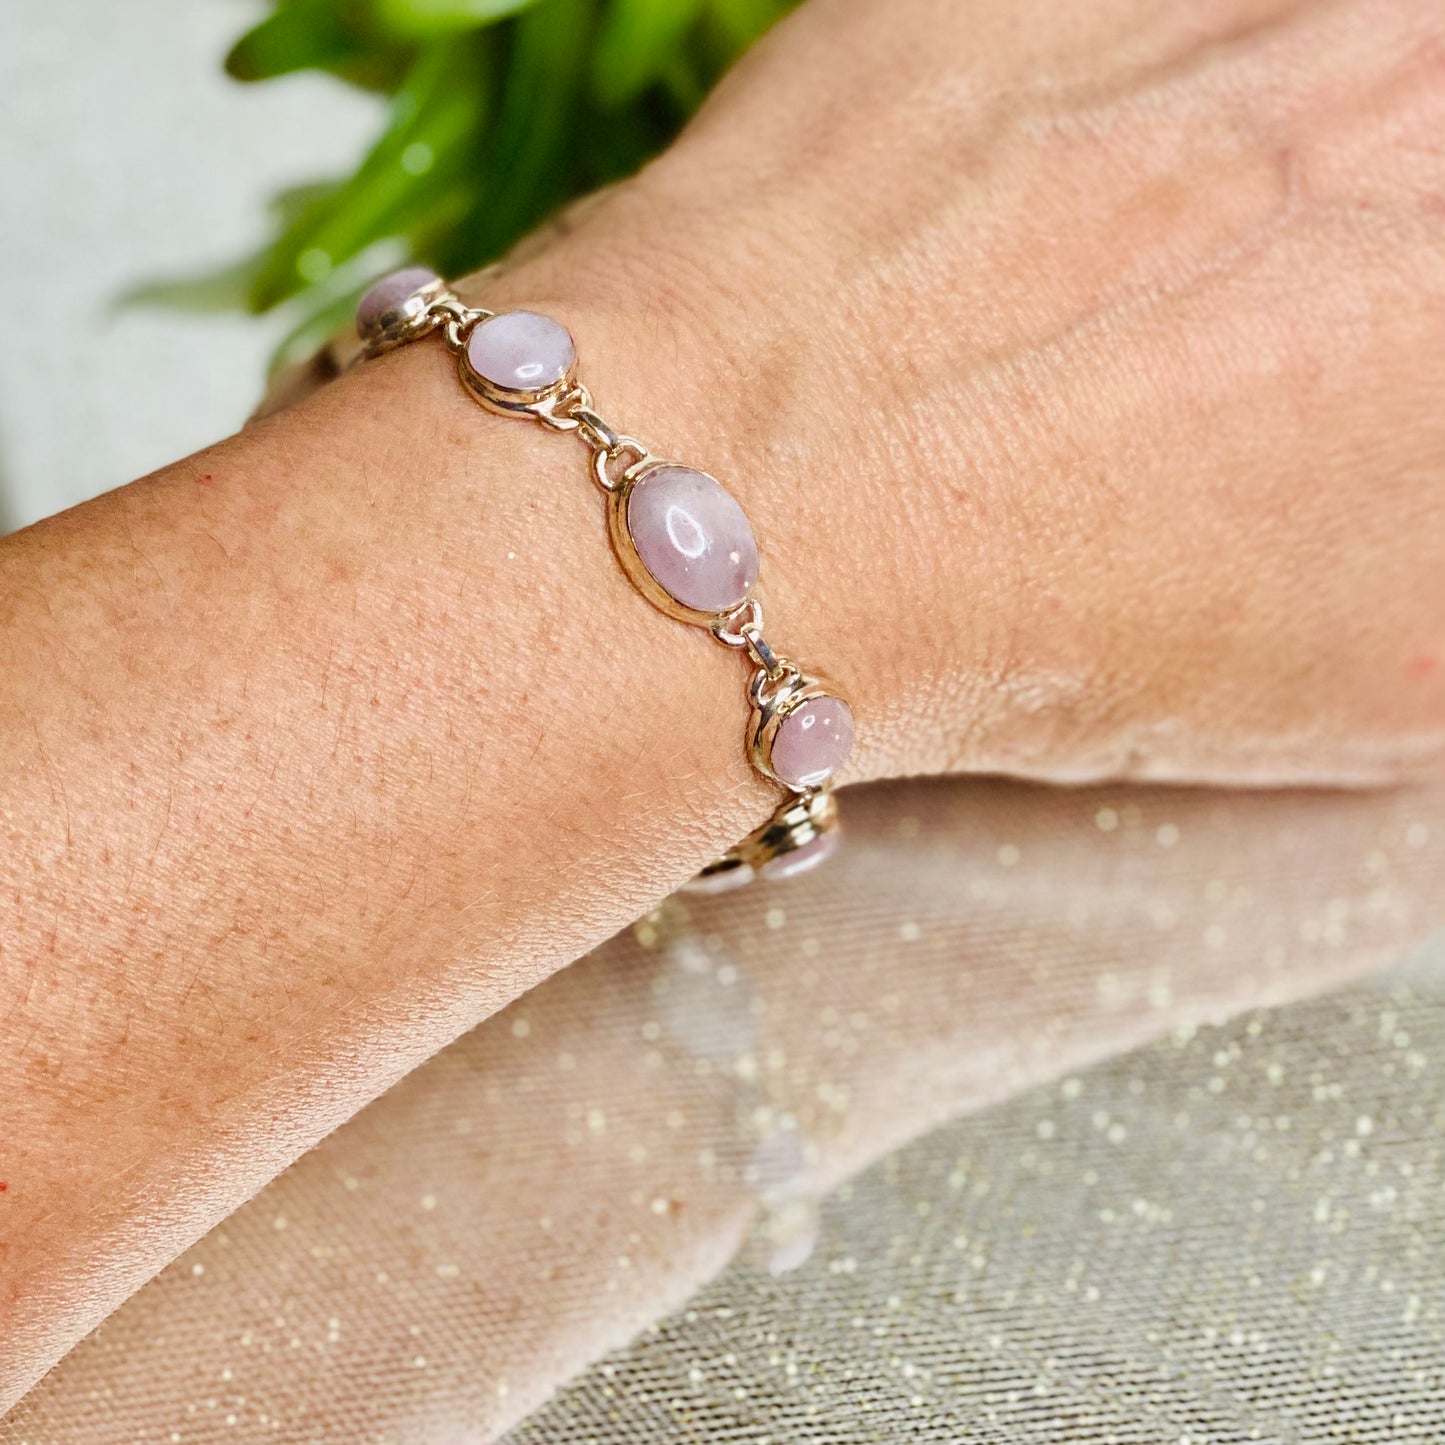 Dreamy Elegance: Kunzite Dangle Bracelet in Sterling Silver - Healing Crystal Jewelry